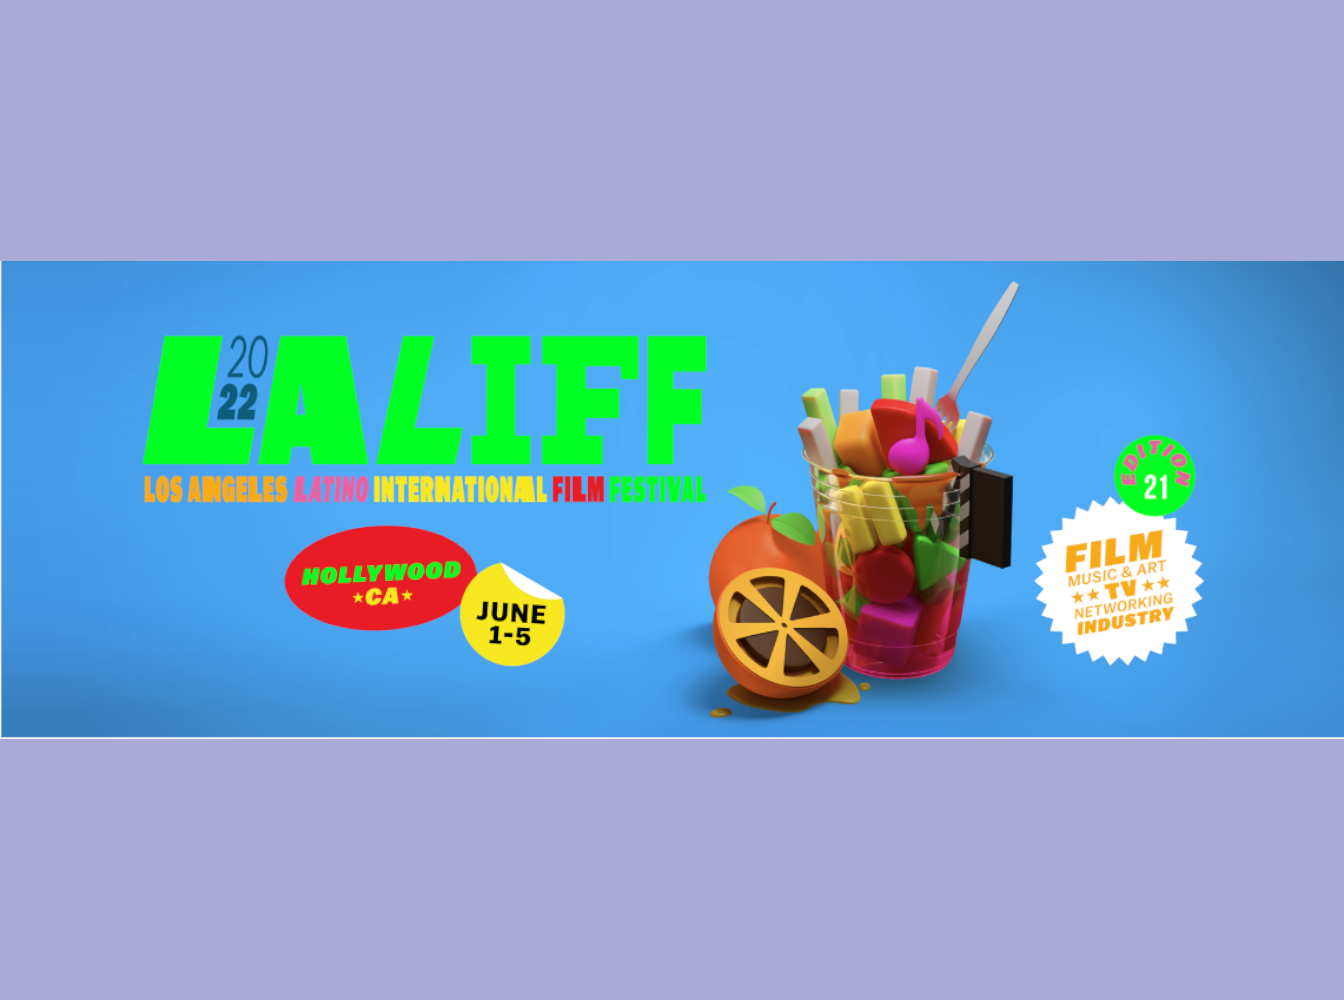 LALIFF 2022: Descubre todo el programa animado del festival angelino